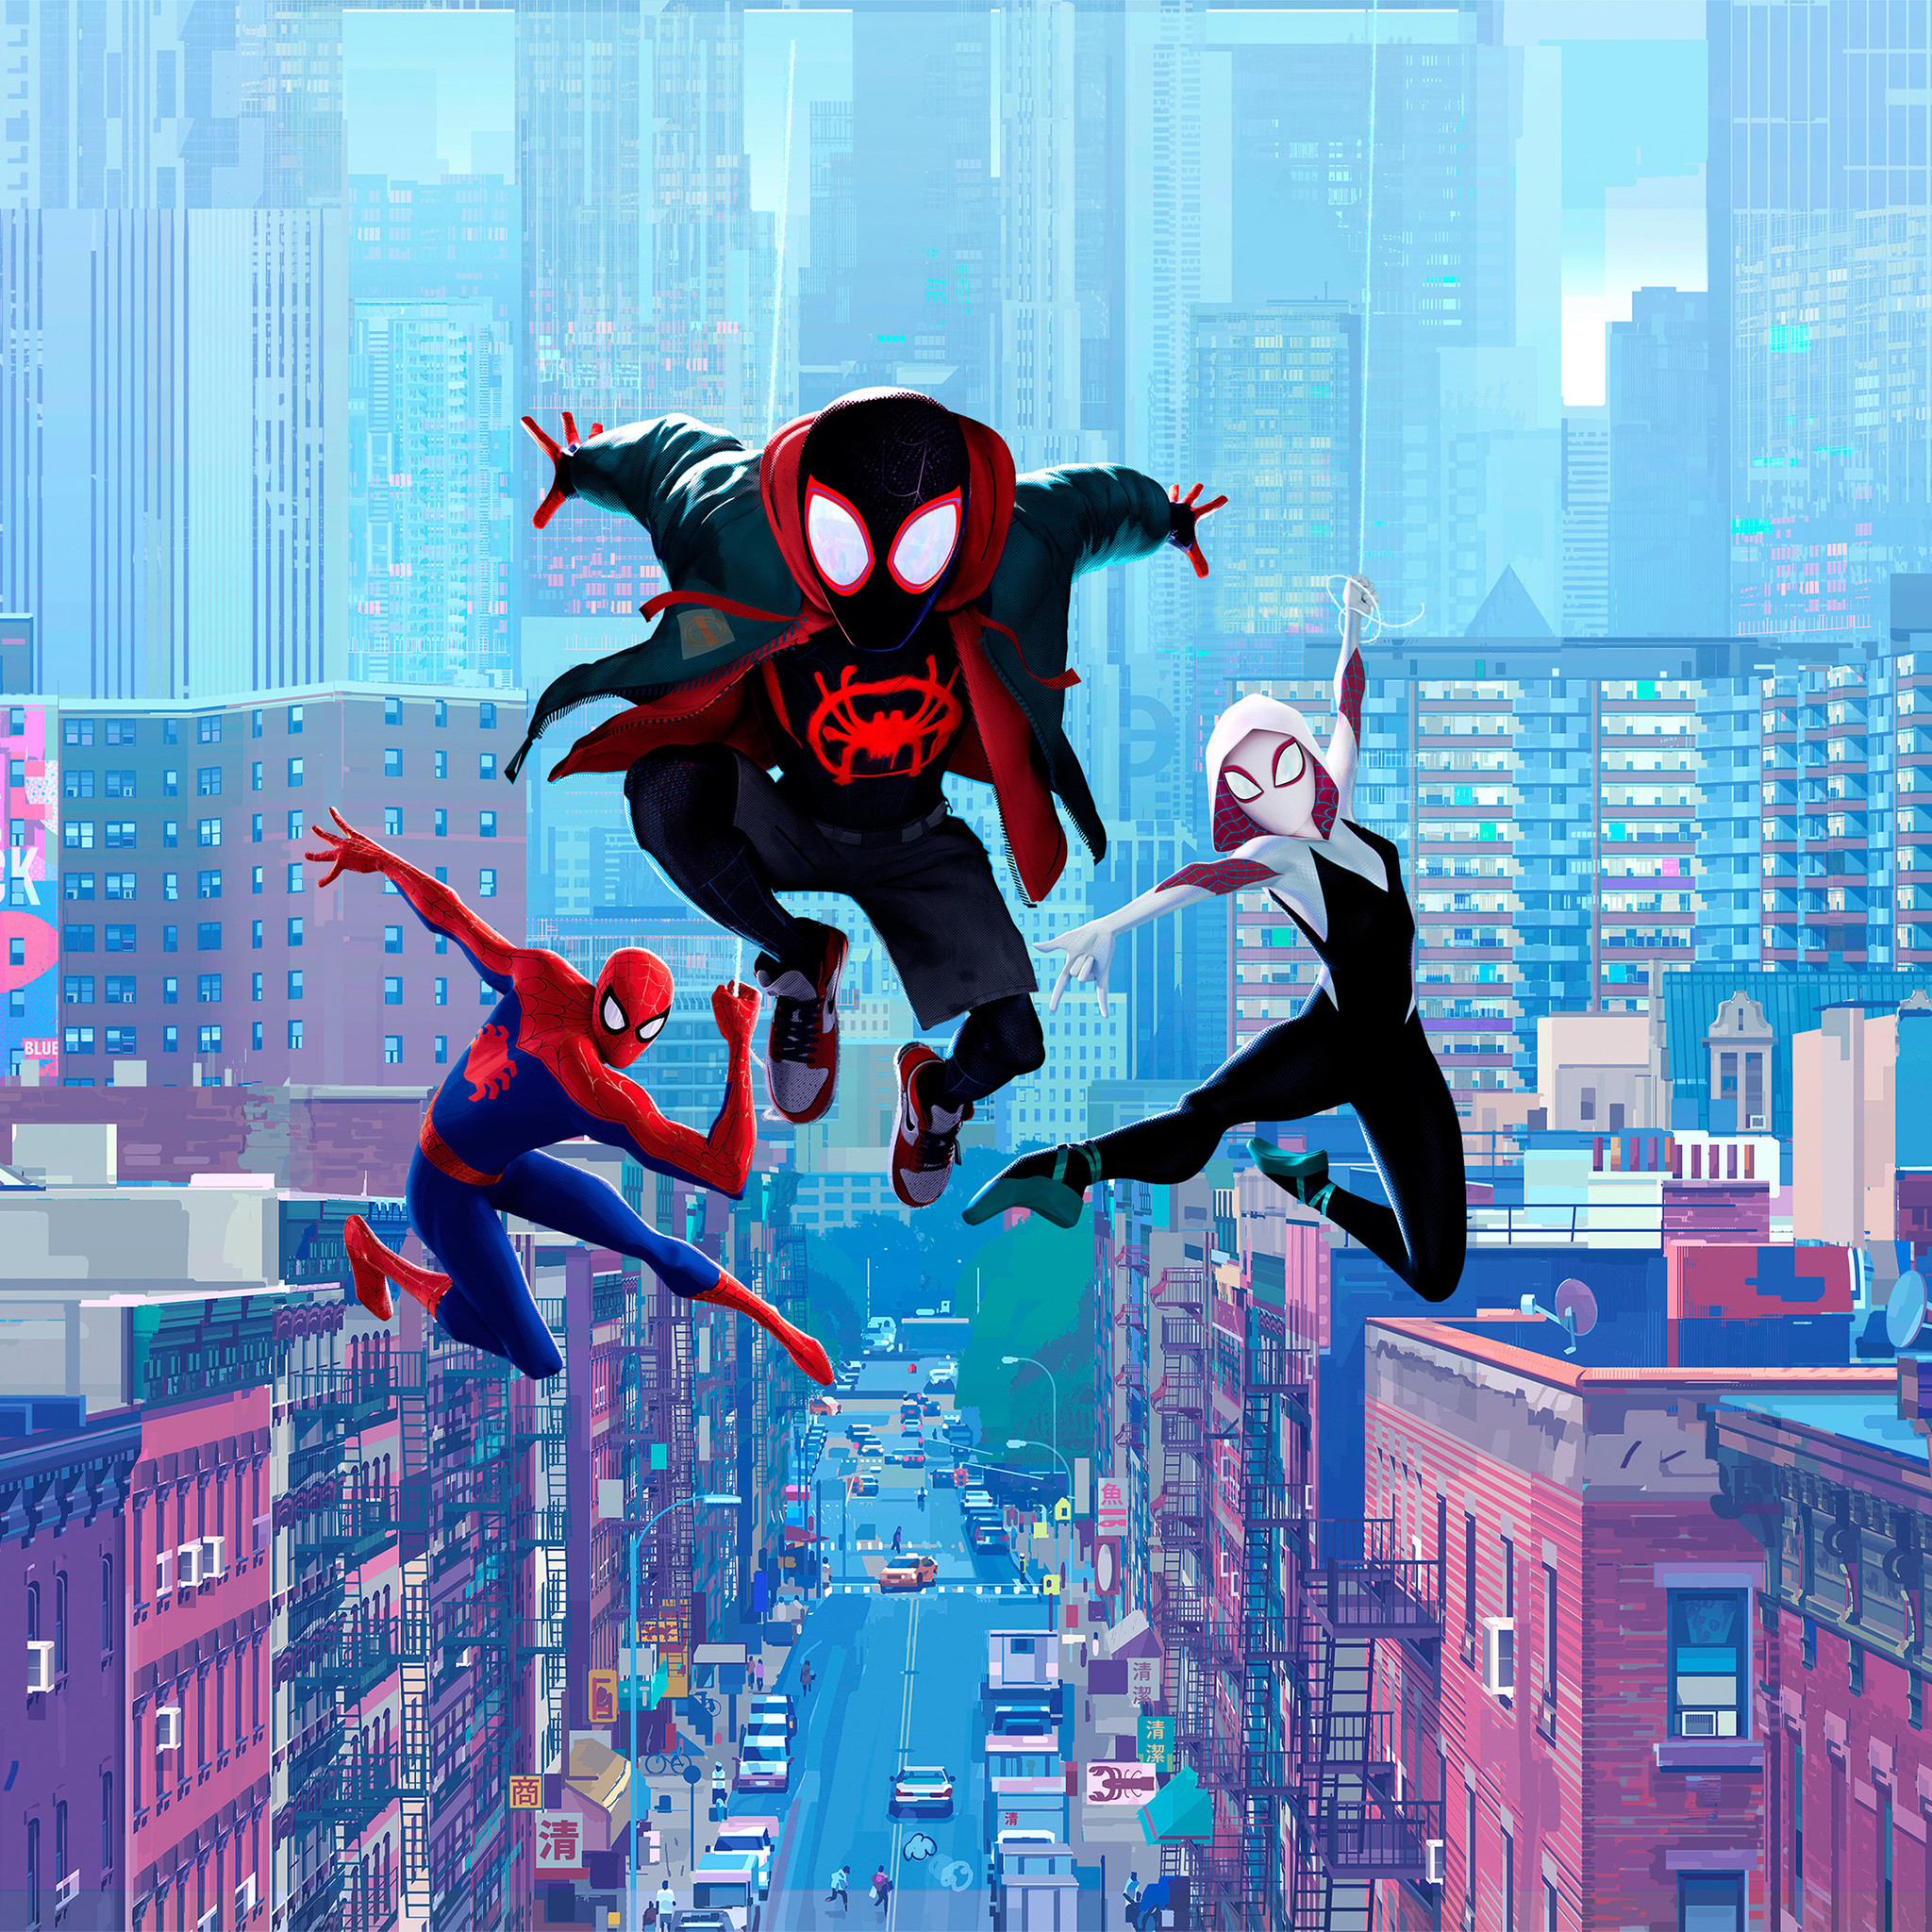 Spider-Man: Into the Spider-Verse - Free Film Festivals